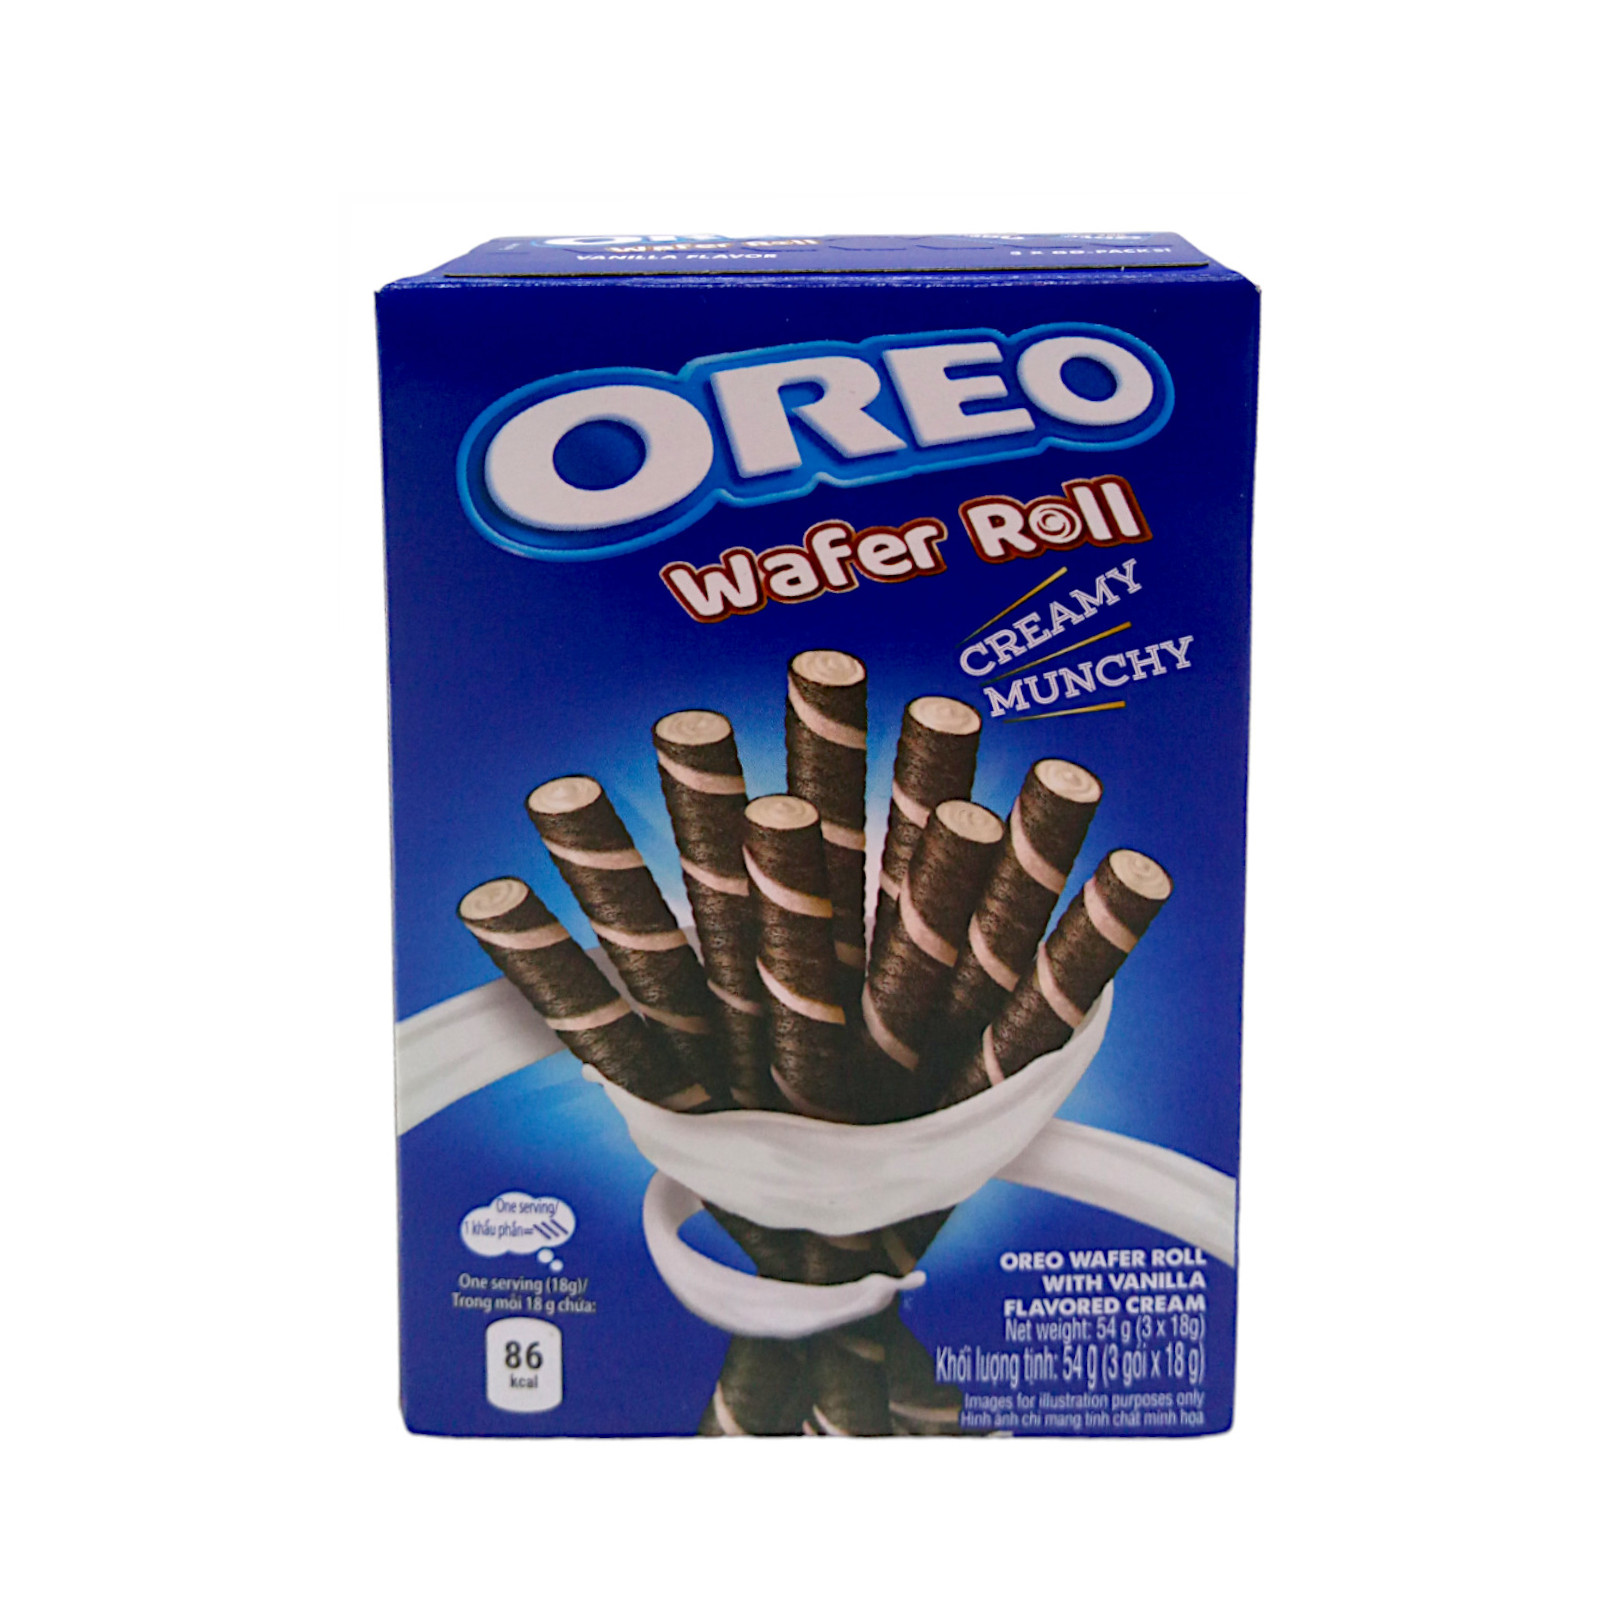 Oreo Wafer Roll Vanilla 54g